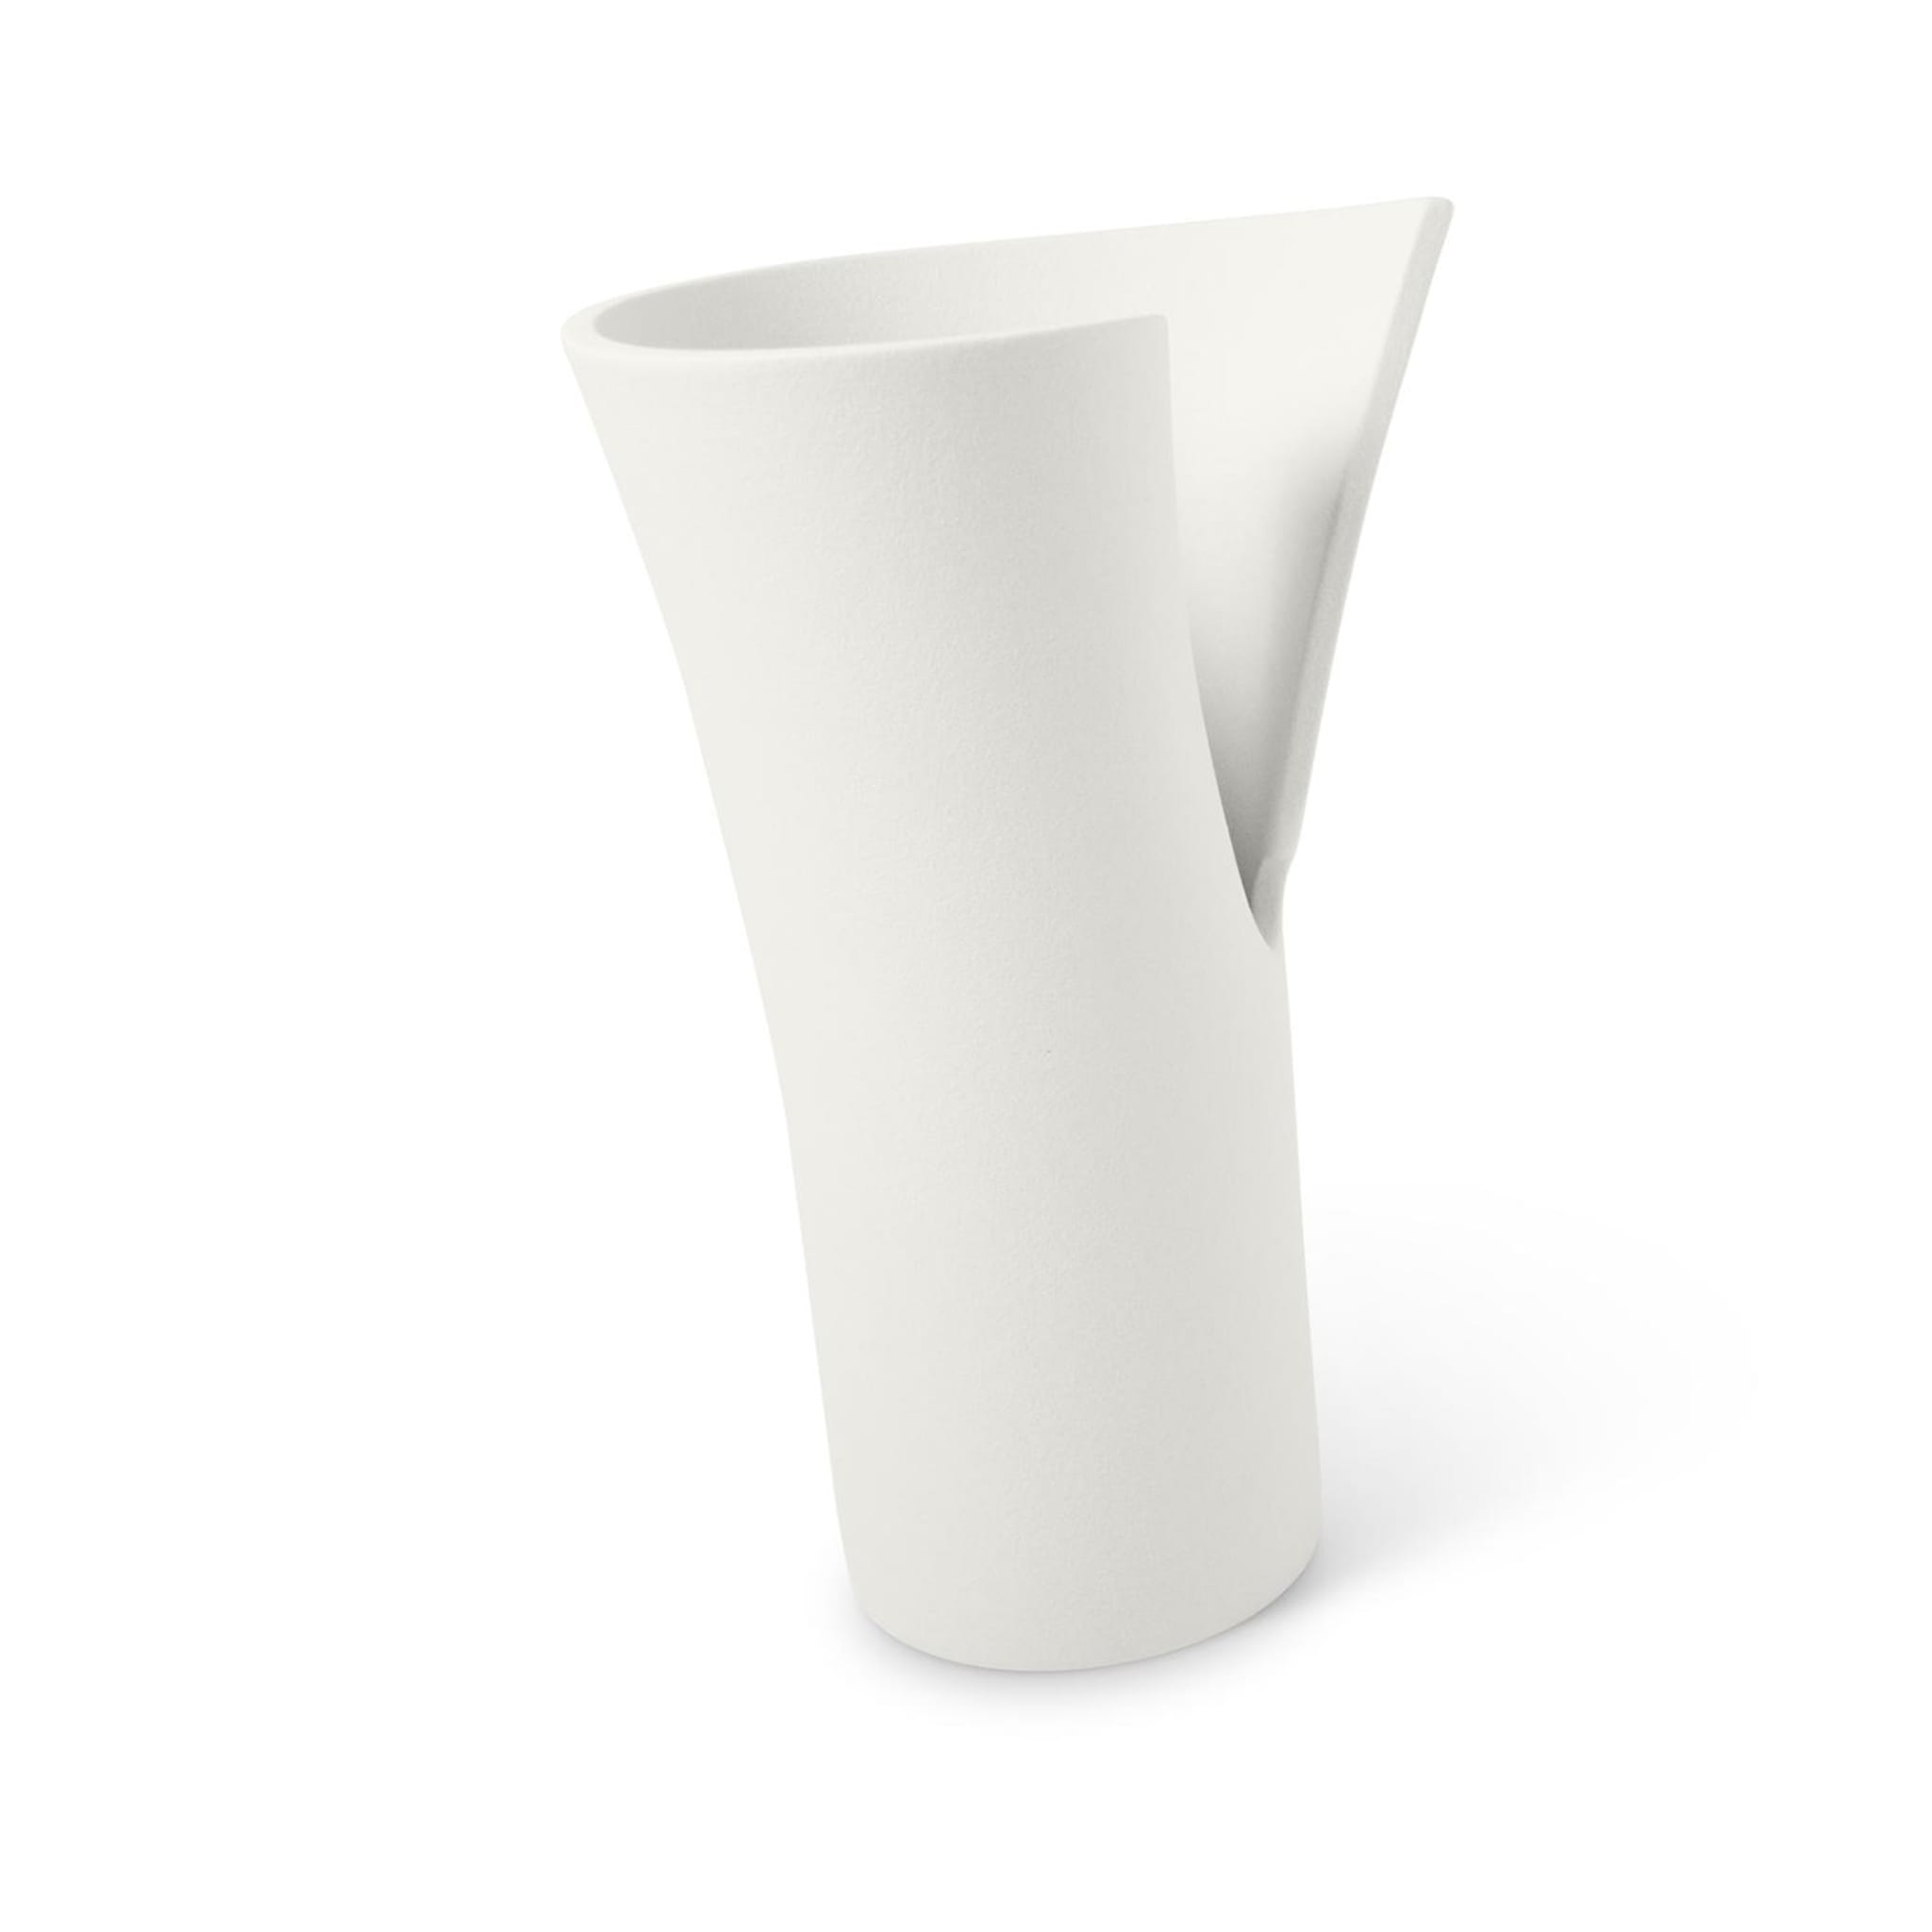 Helix Vase #1 - Alternative view 1